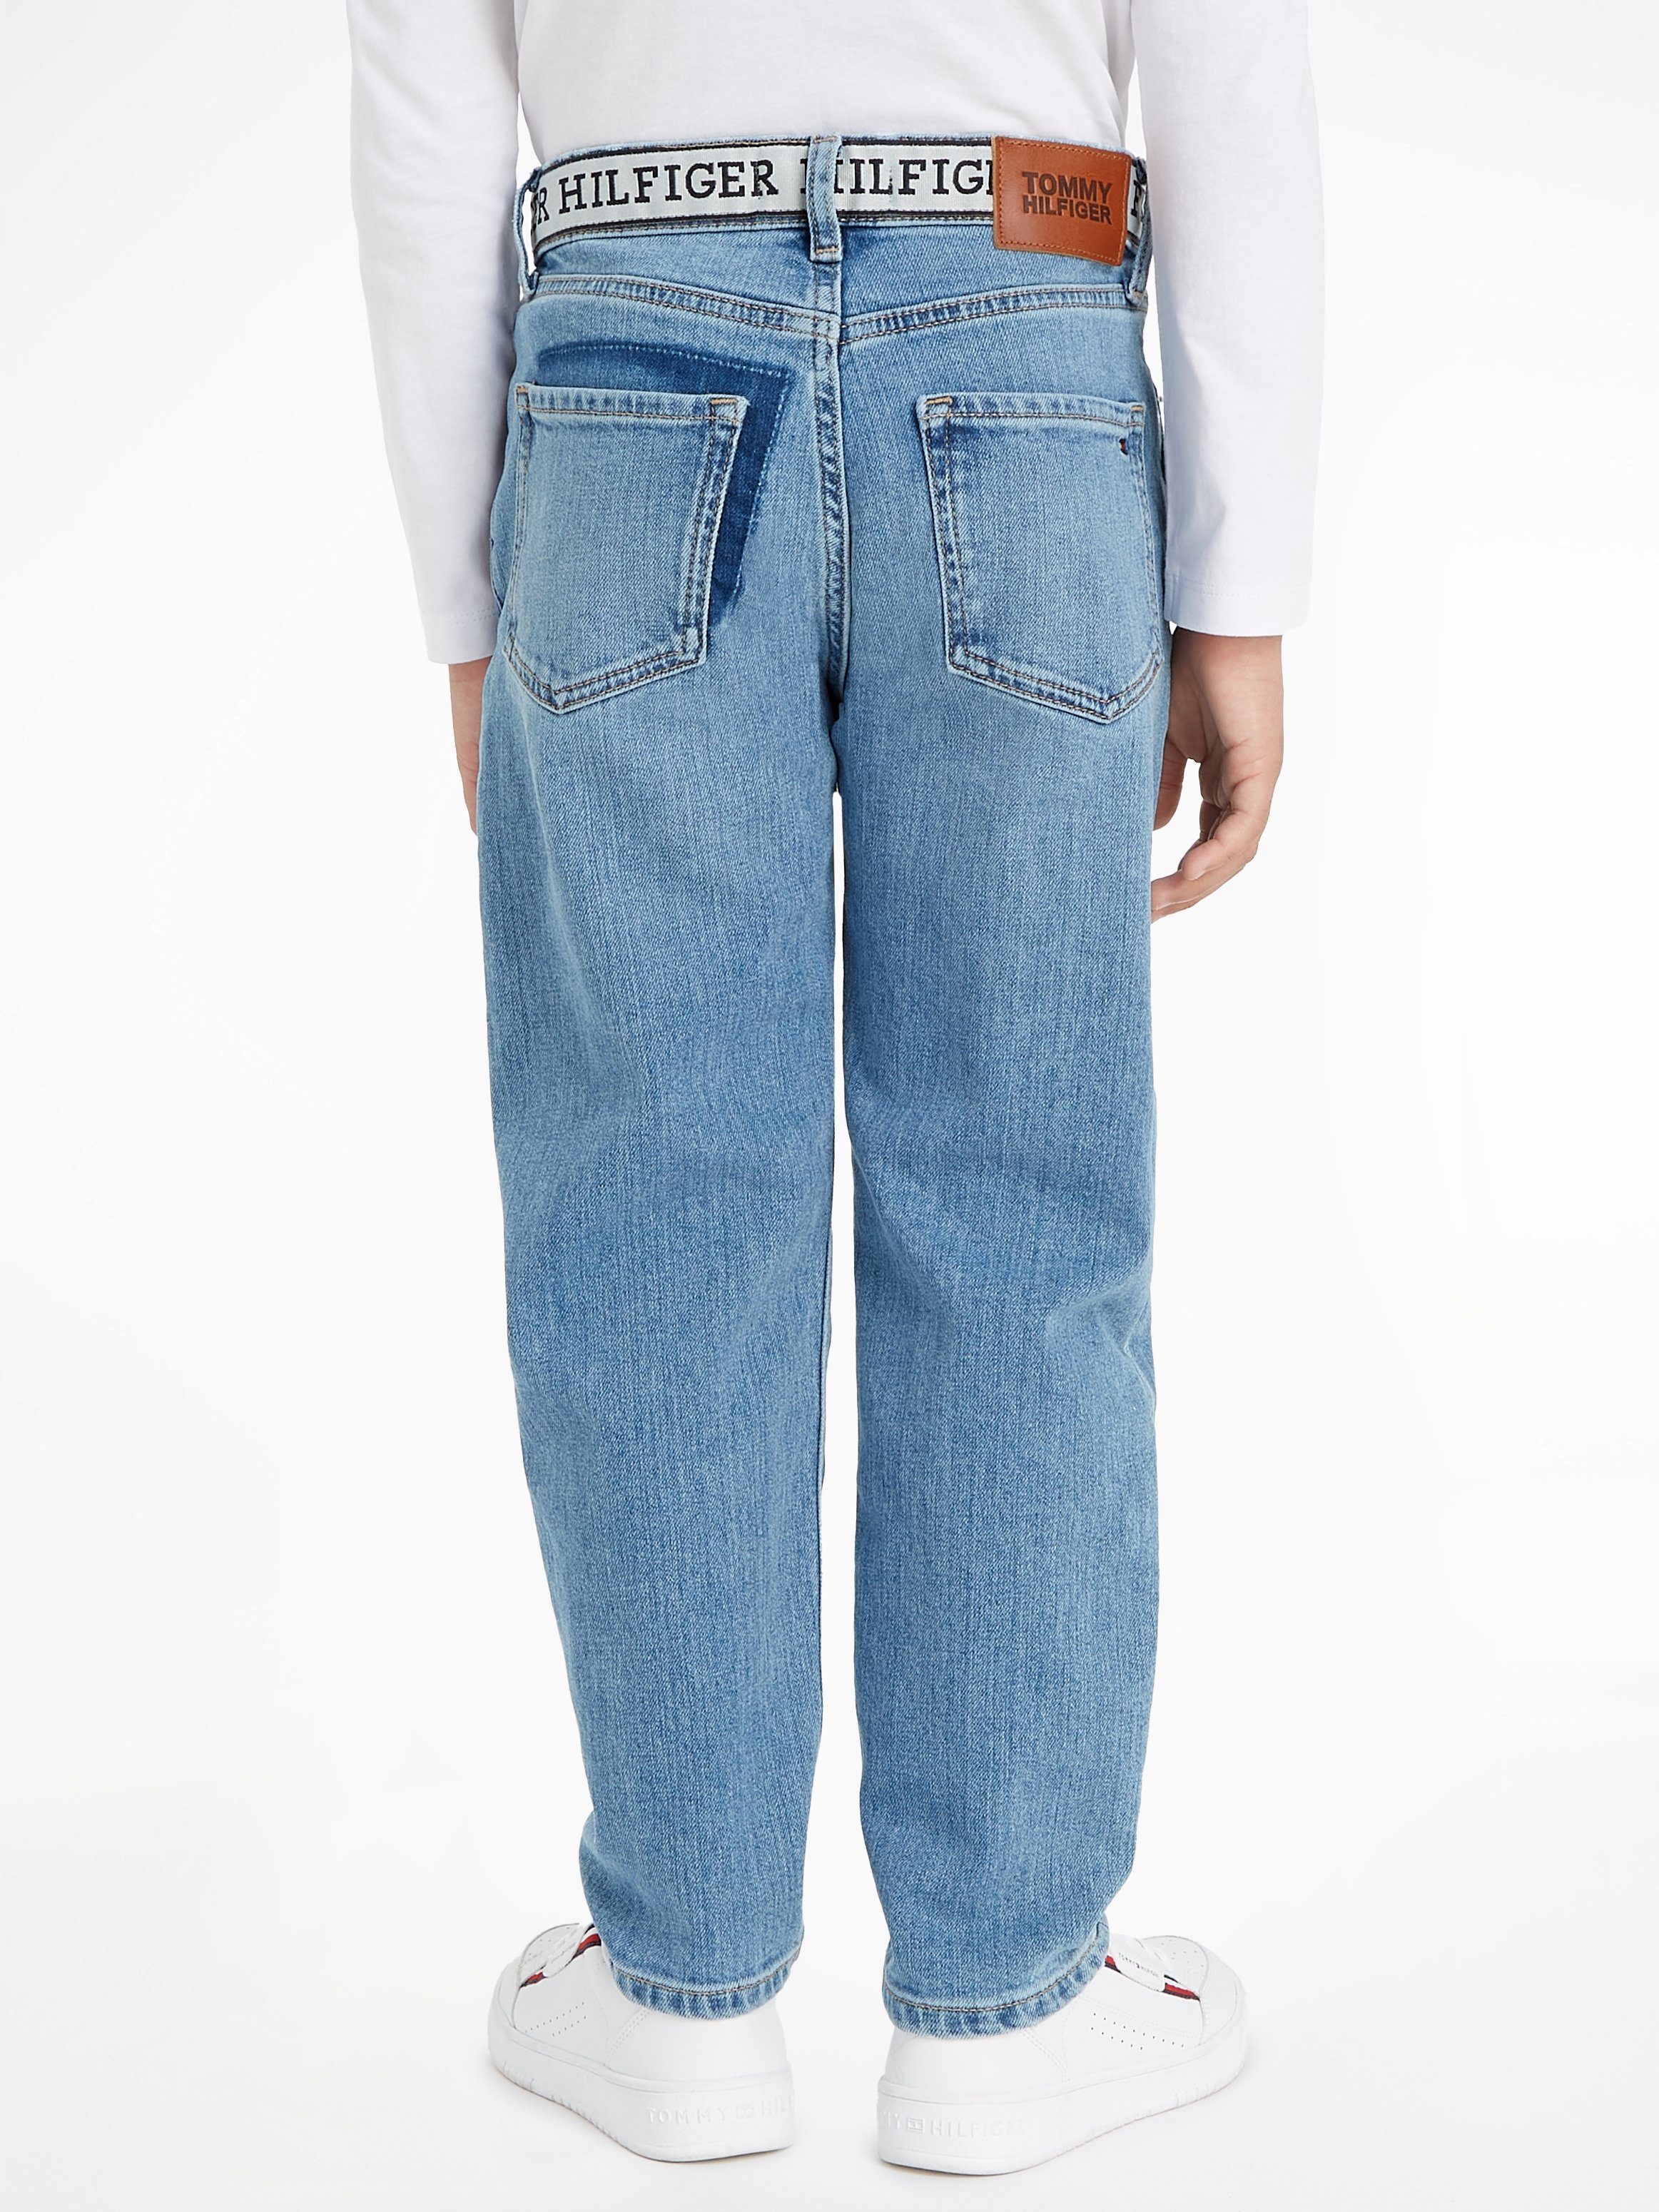 Tommy Hilfiger mit Straight-Jeans RECONSTRUCTED ARCHIVE Logoschriftzug WASH Bund MID am